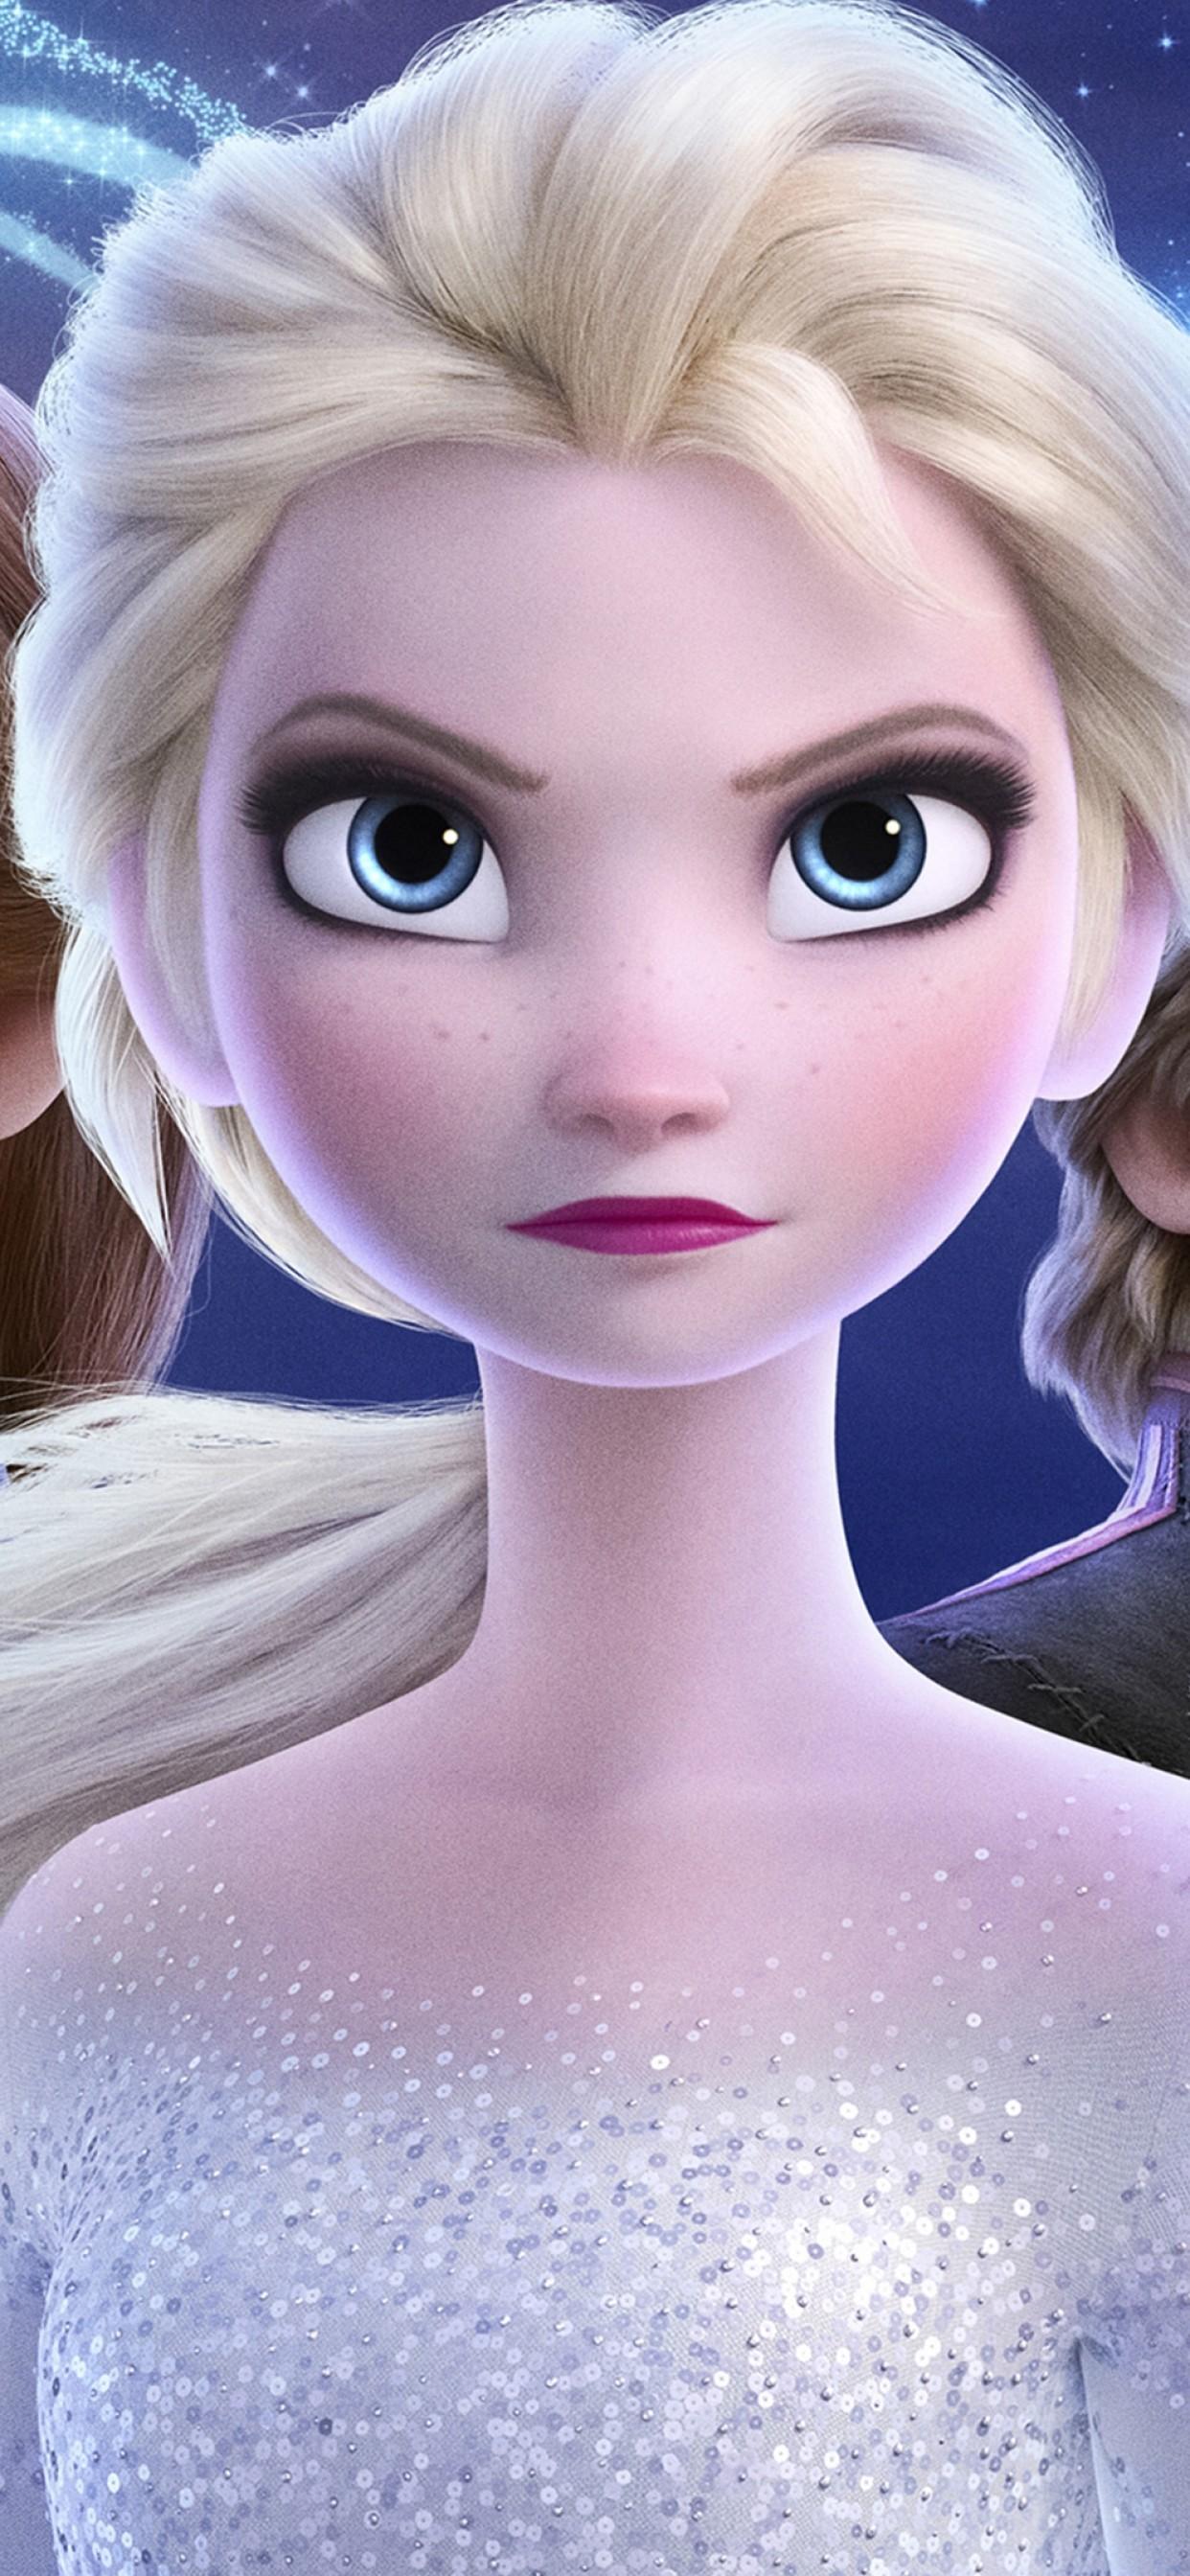 Download 1242x2688 Frozen Queen Elsa, Animation, Anna